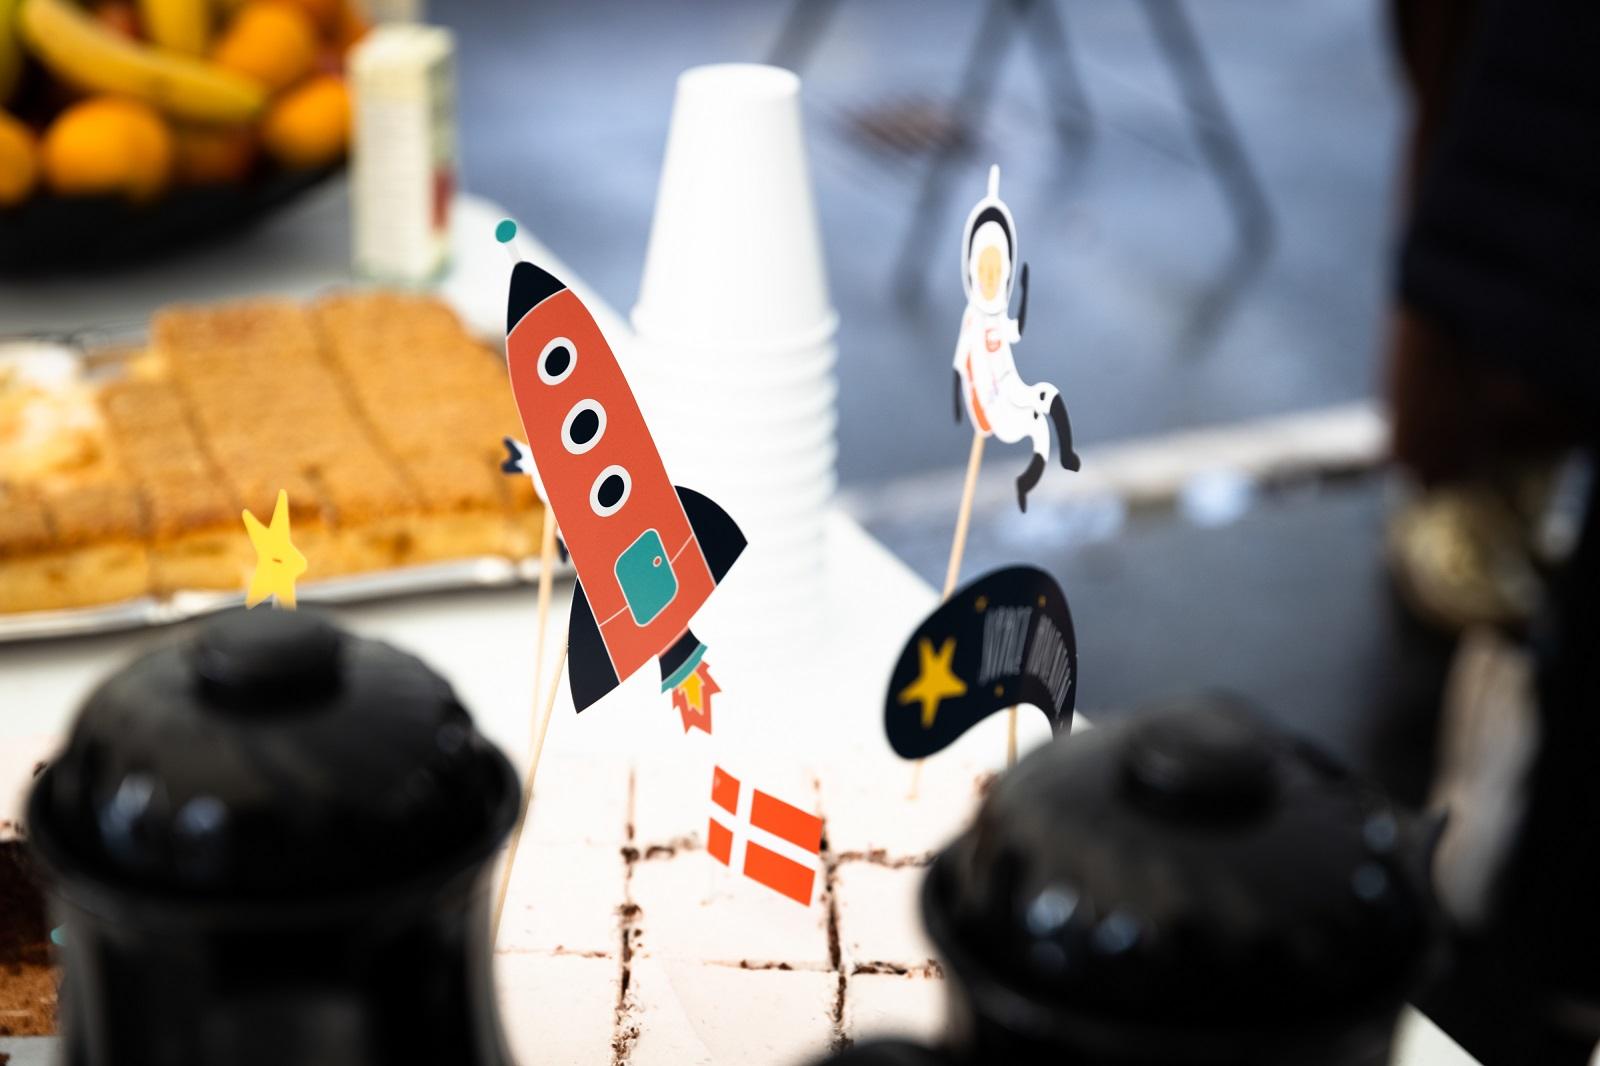 Papfigurer som raket og astronaut på et bord med kaffe og kage